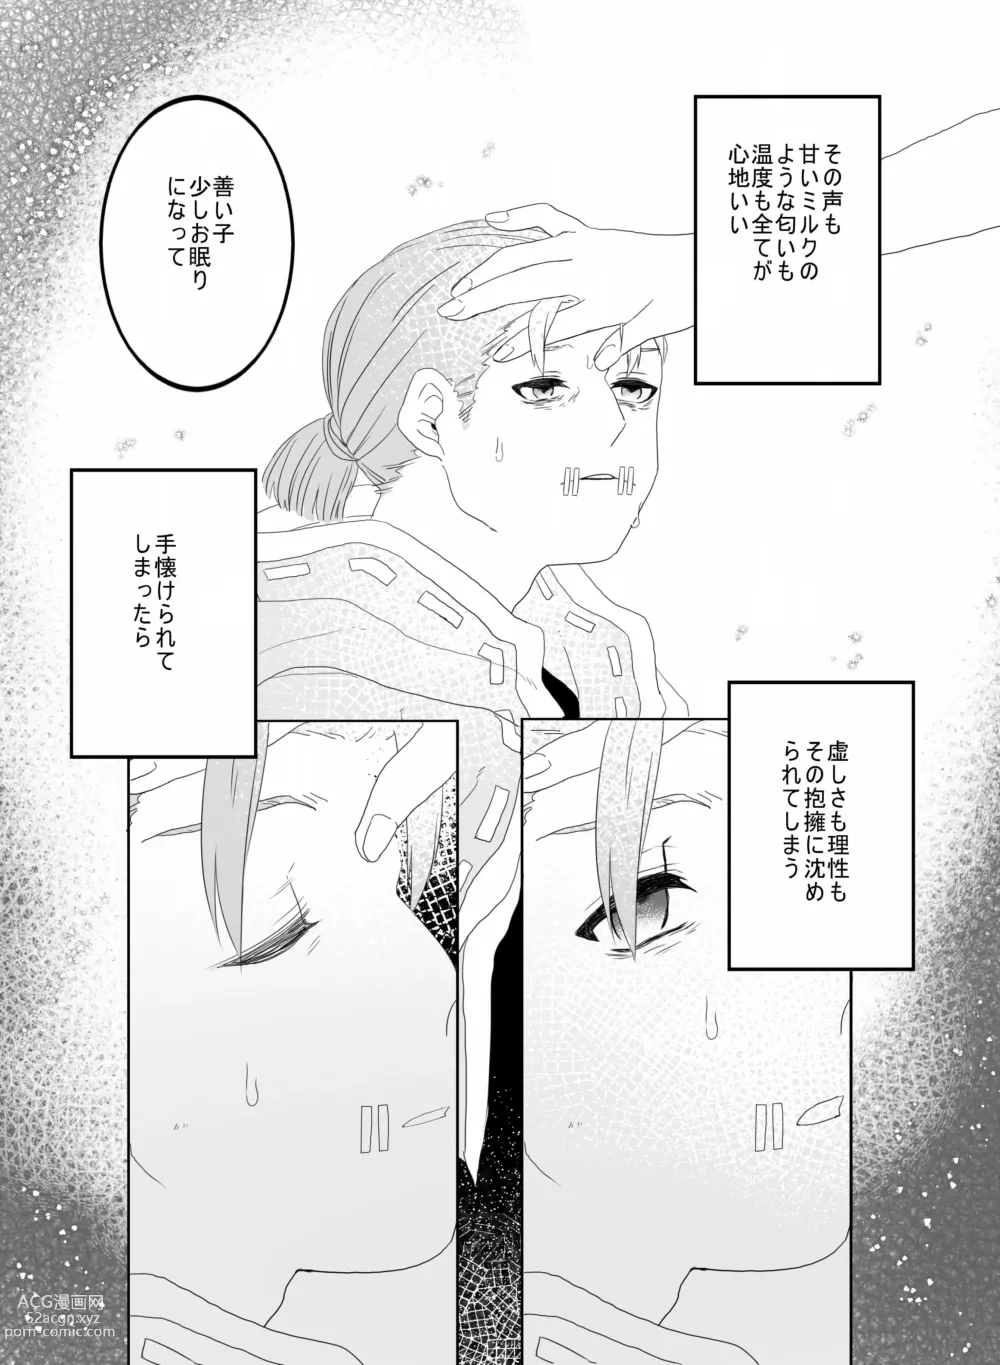 Page 14 of doujinshi [Hiura] [Web Sairoku]